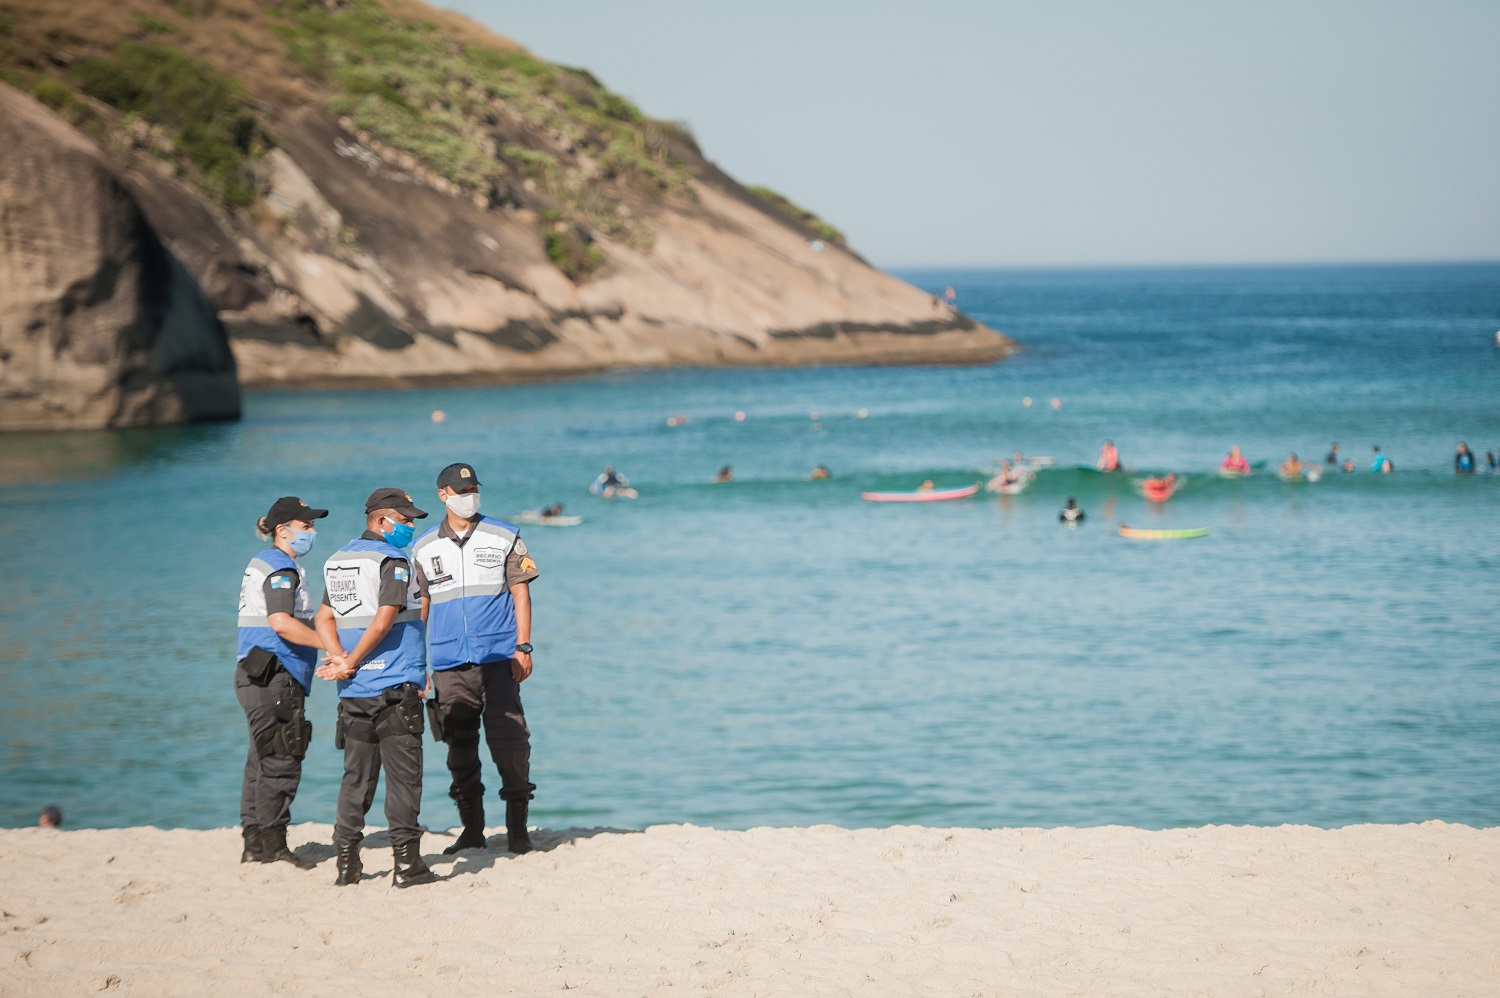 Agentes da Guarda Municipal inspecionam a praia, no Recreio dos Bandeirantes, com o mar repleto de surfistas. Foto Allan Carvalho (NurPhoto)